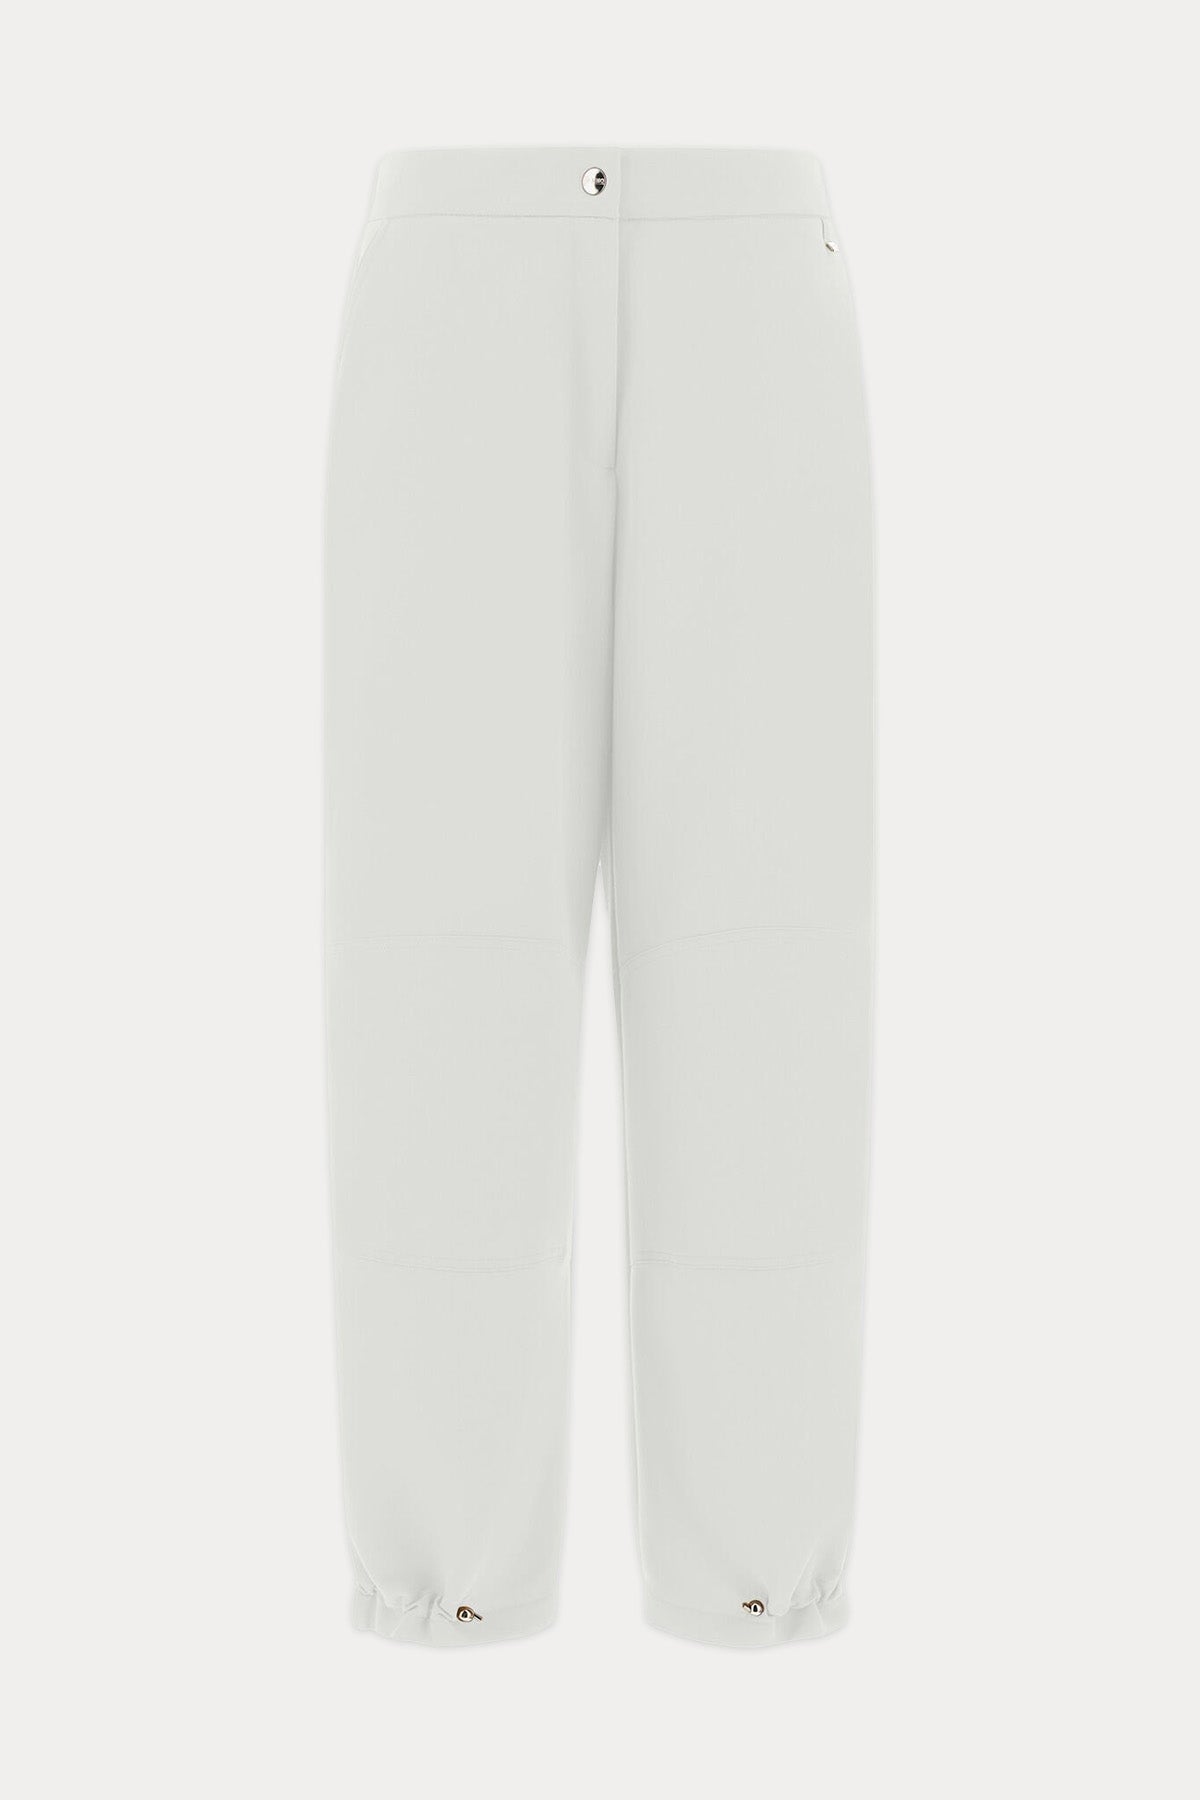 Herno Yüksek Bel Paçası Çıtçıtlı Beli Lastikli Pantolon